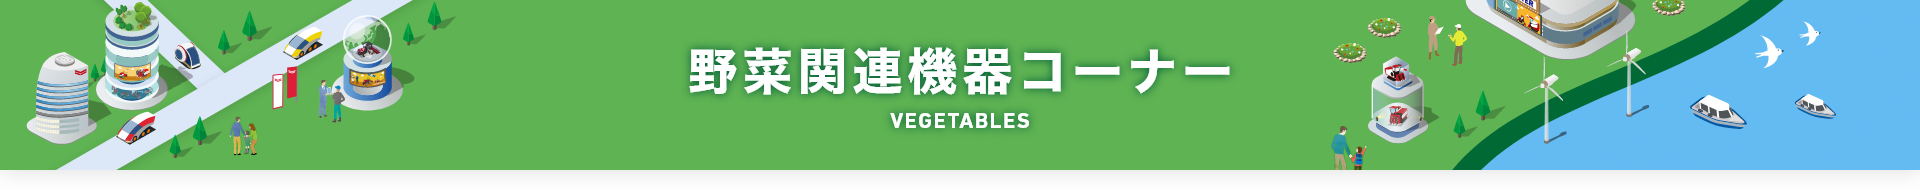 野菜関連機器コーナー